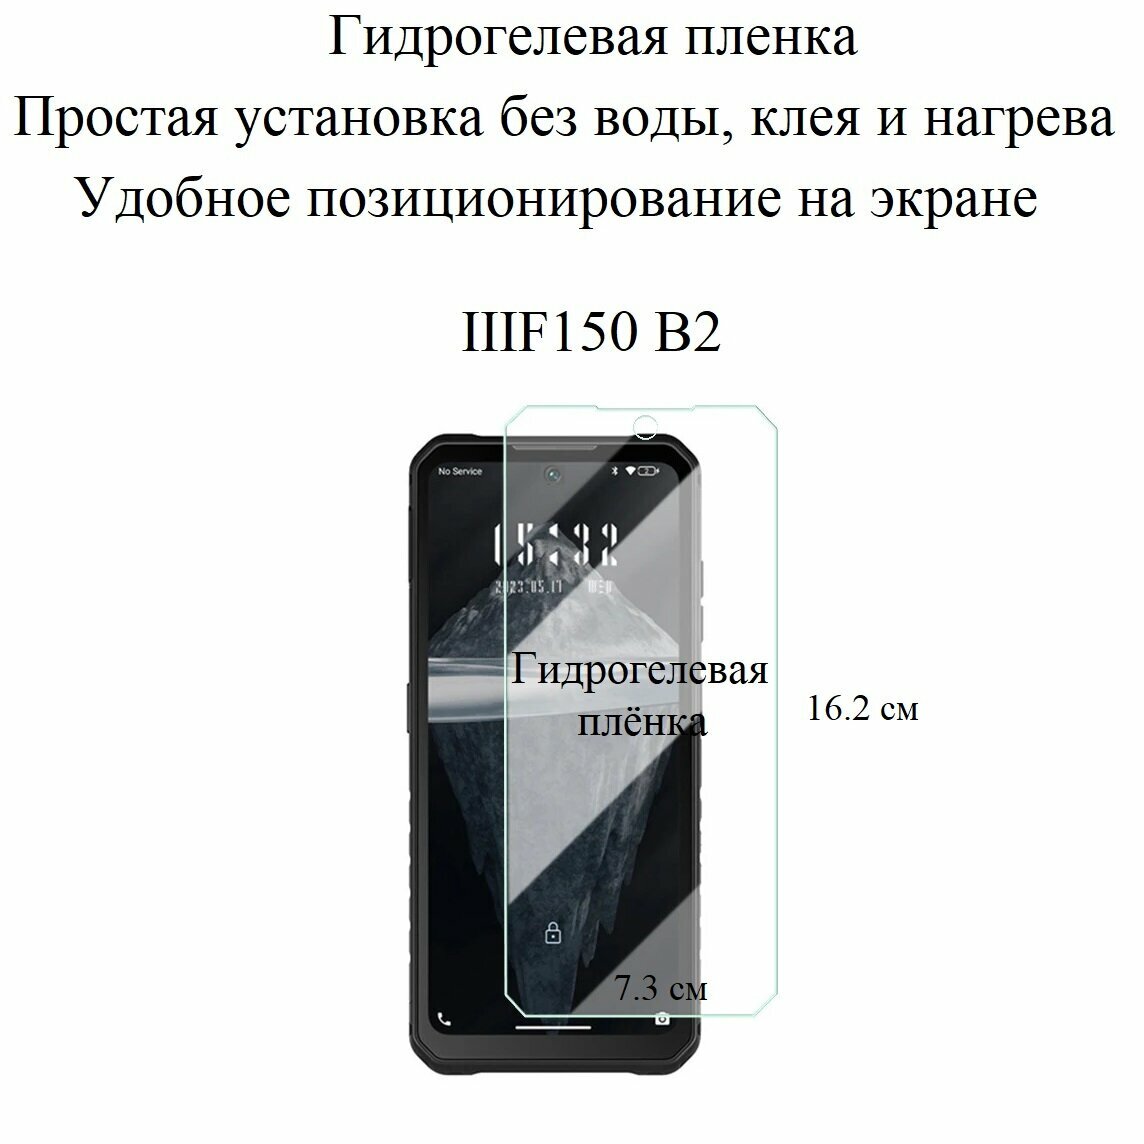 Матовая гидрогелевая пленка hoco. на экран смартфона IIIF150 B2